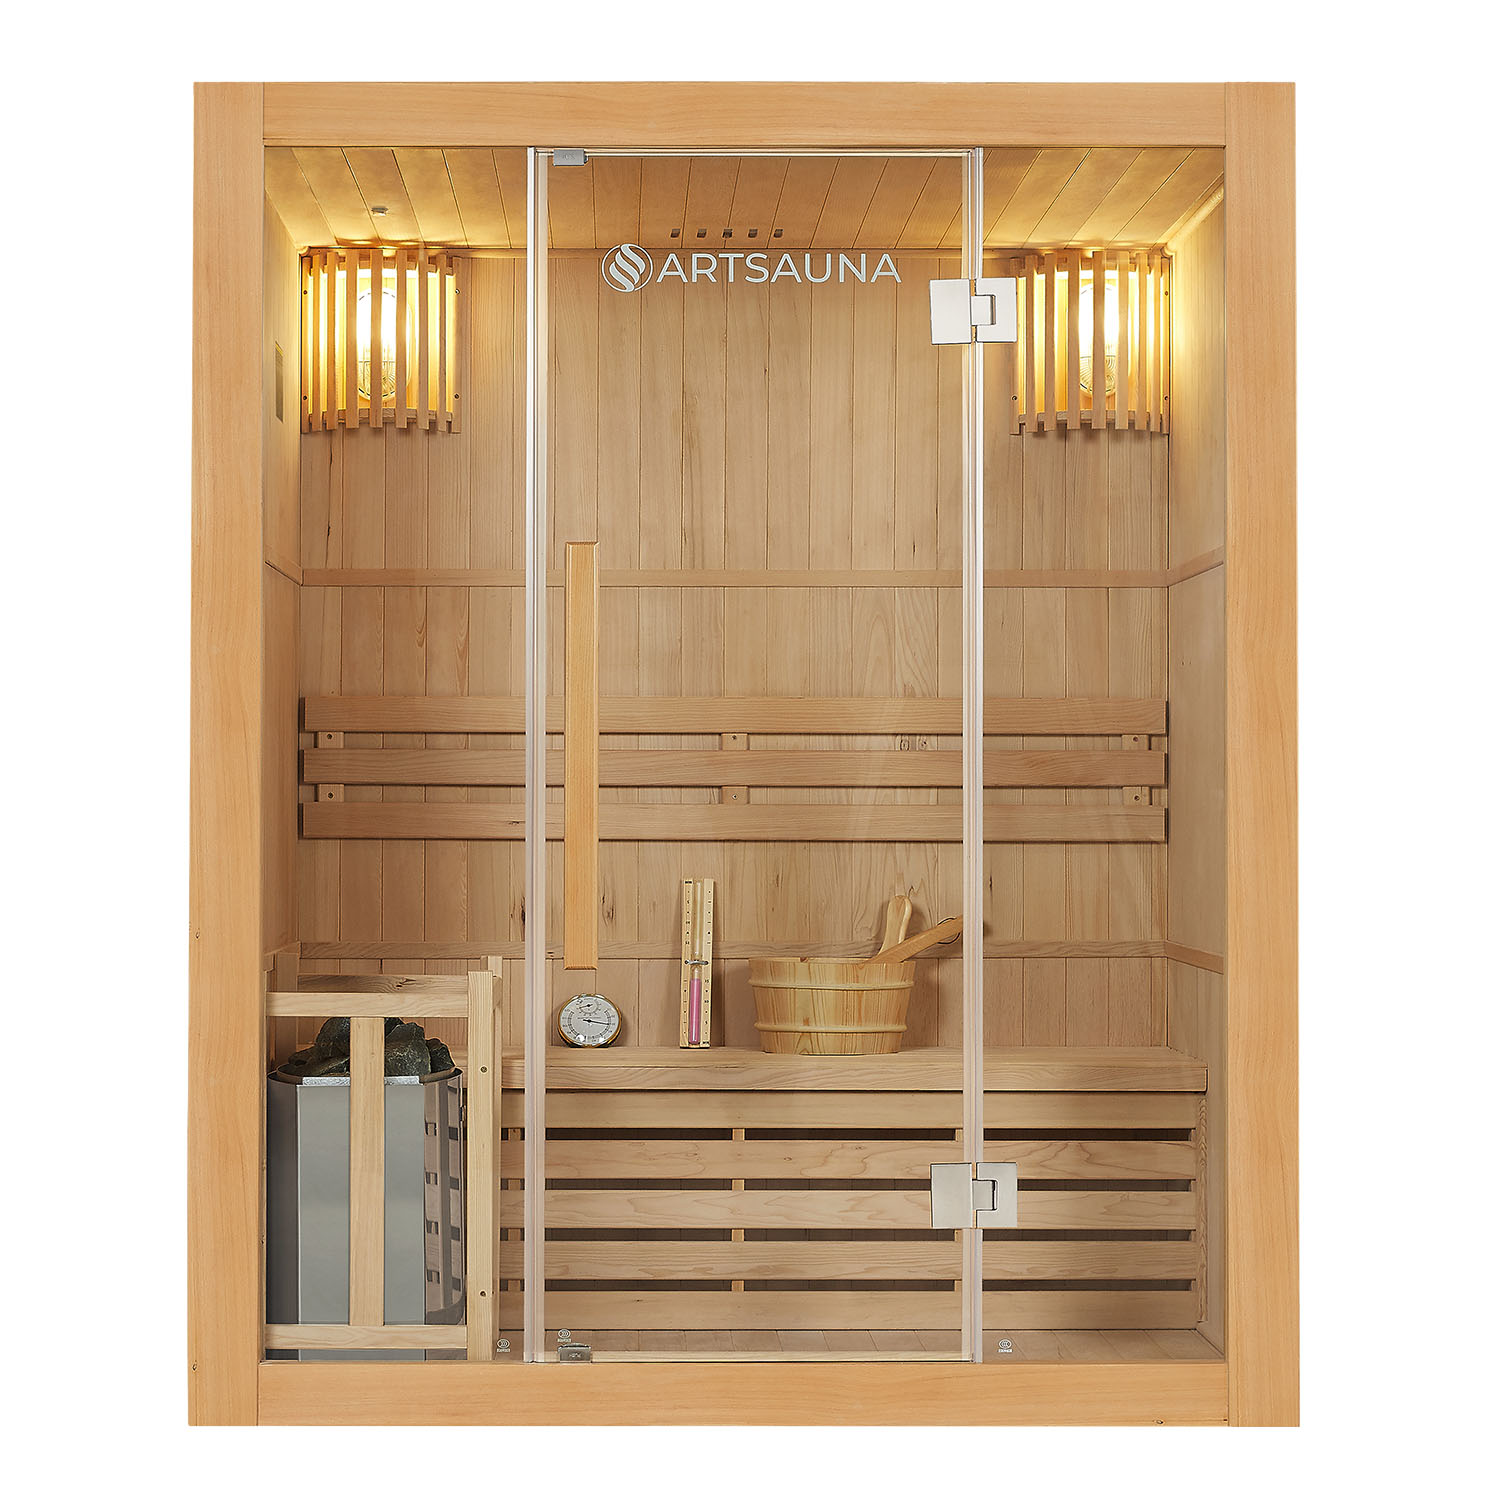 Levně Juskys Tradiční saunová kabina / finská sauna Tampere 150 x 110 cm 4,5 kW